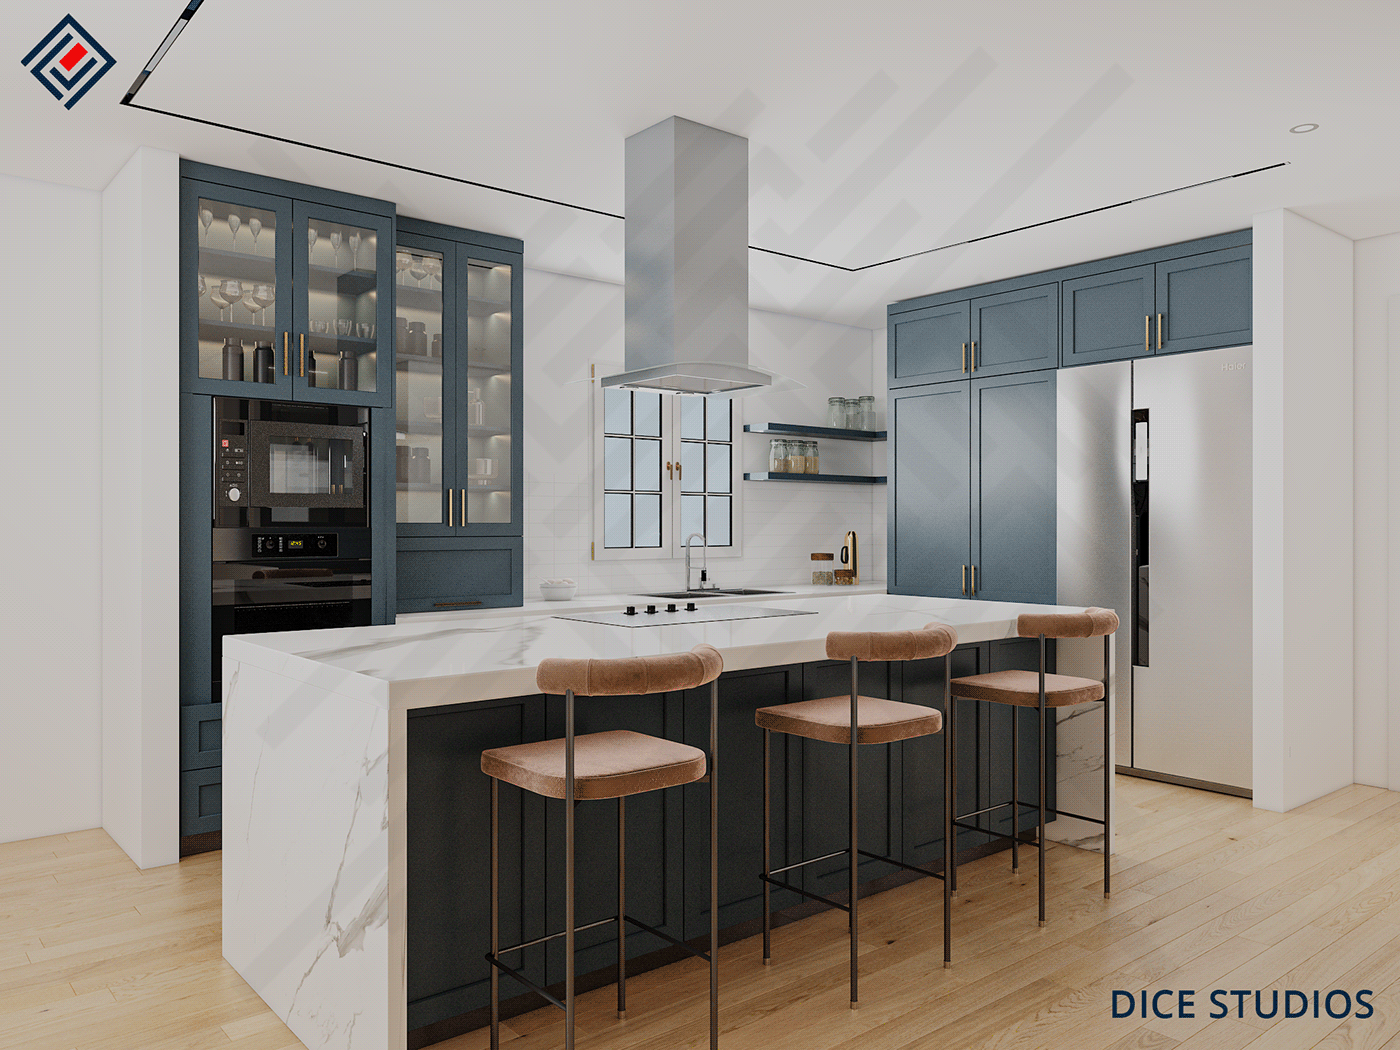 3D architecture Freelance Interior interior design  kitchen modern Render visualization vray